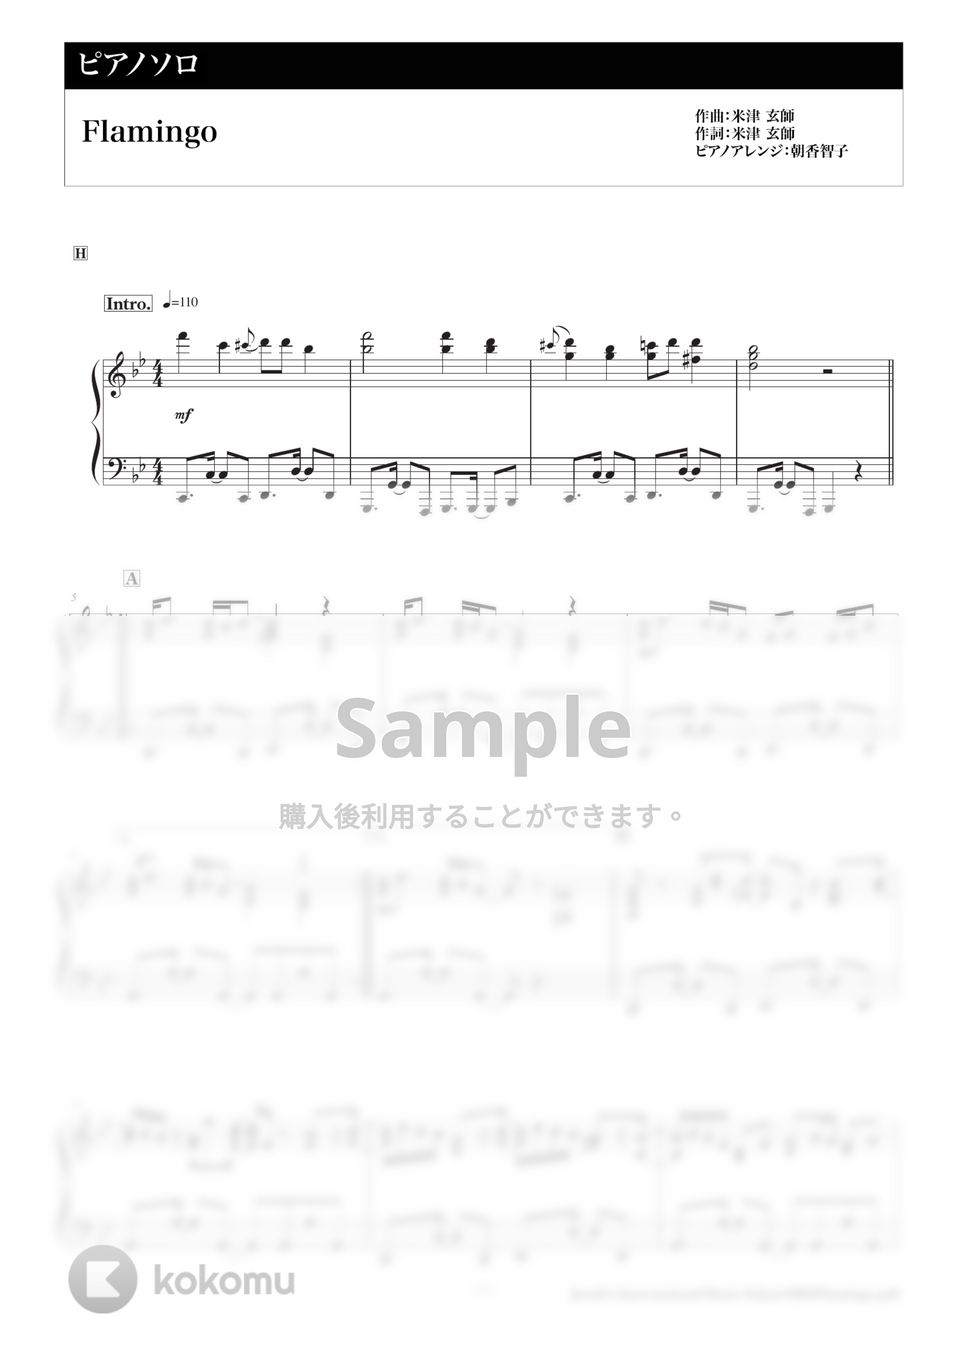 米津玄師 - Flamingo (上級ピアノ) by 朝香智子